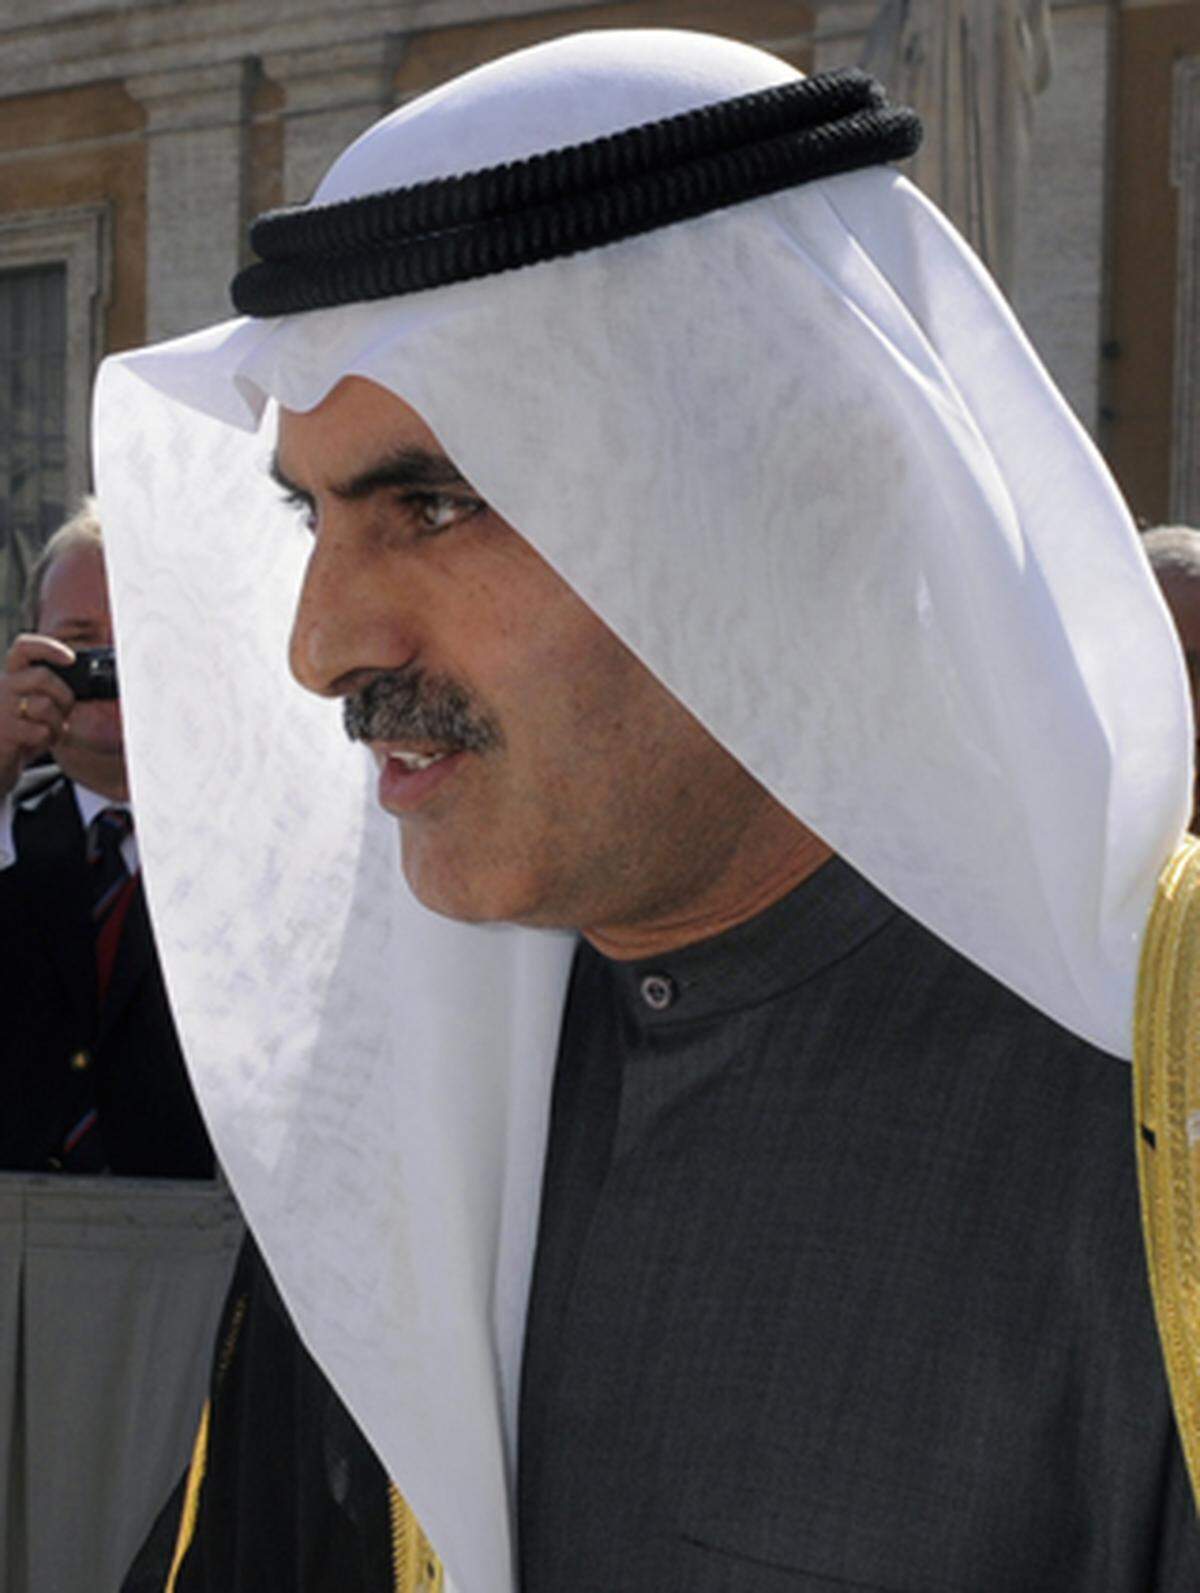 Der Patriach der Emirate gilt als Finanzierer des Mittleren Ostens mit seiner Bank "Mashreq".